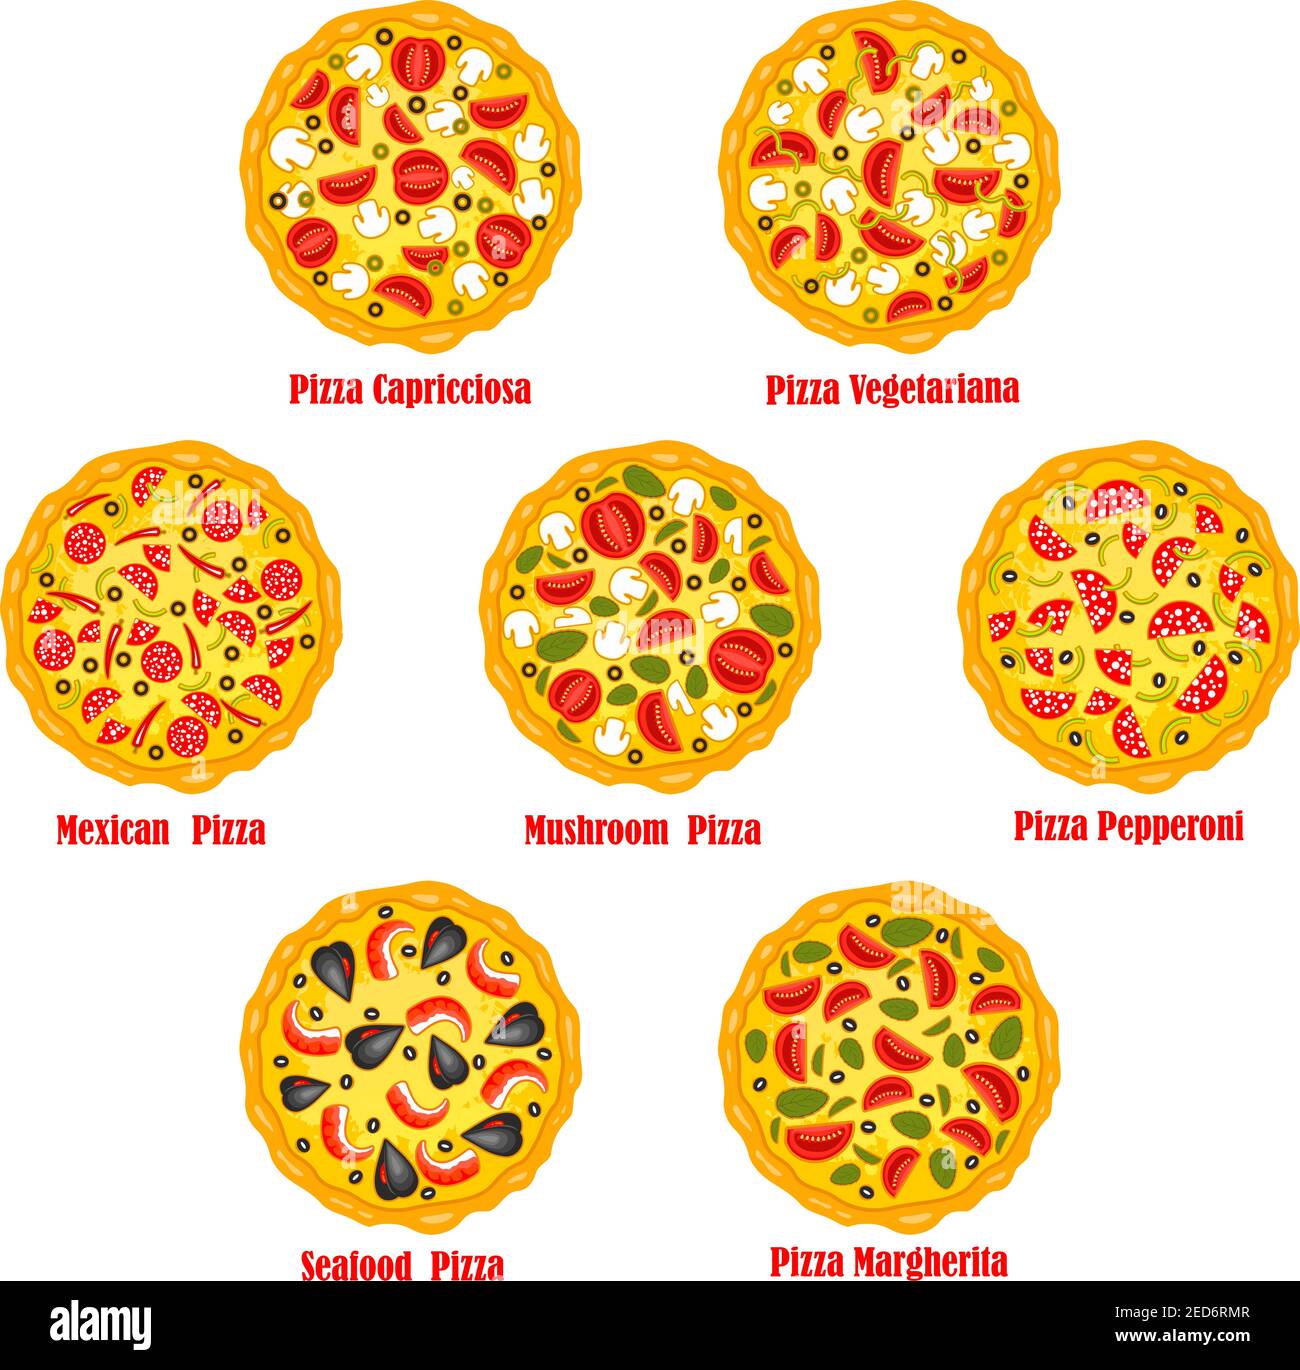 технологическая карта для пиццы пепперони фото 21